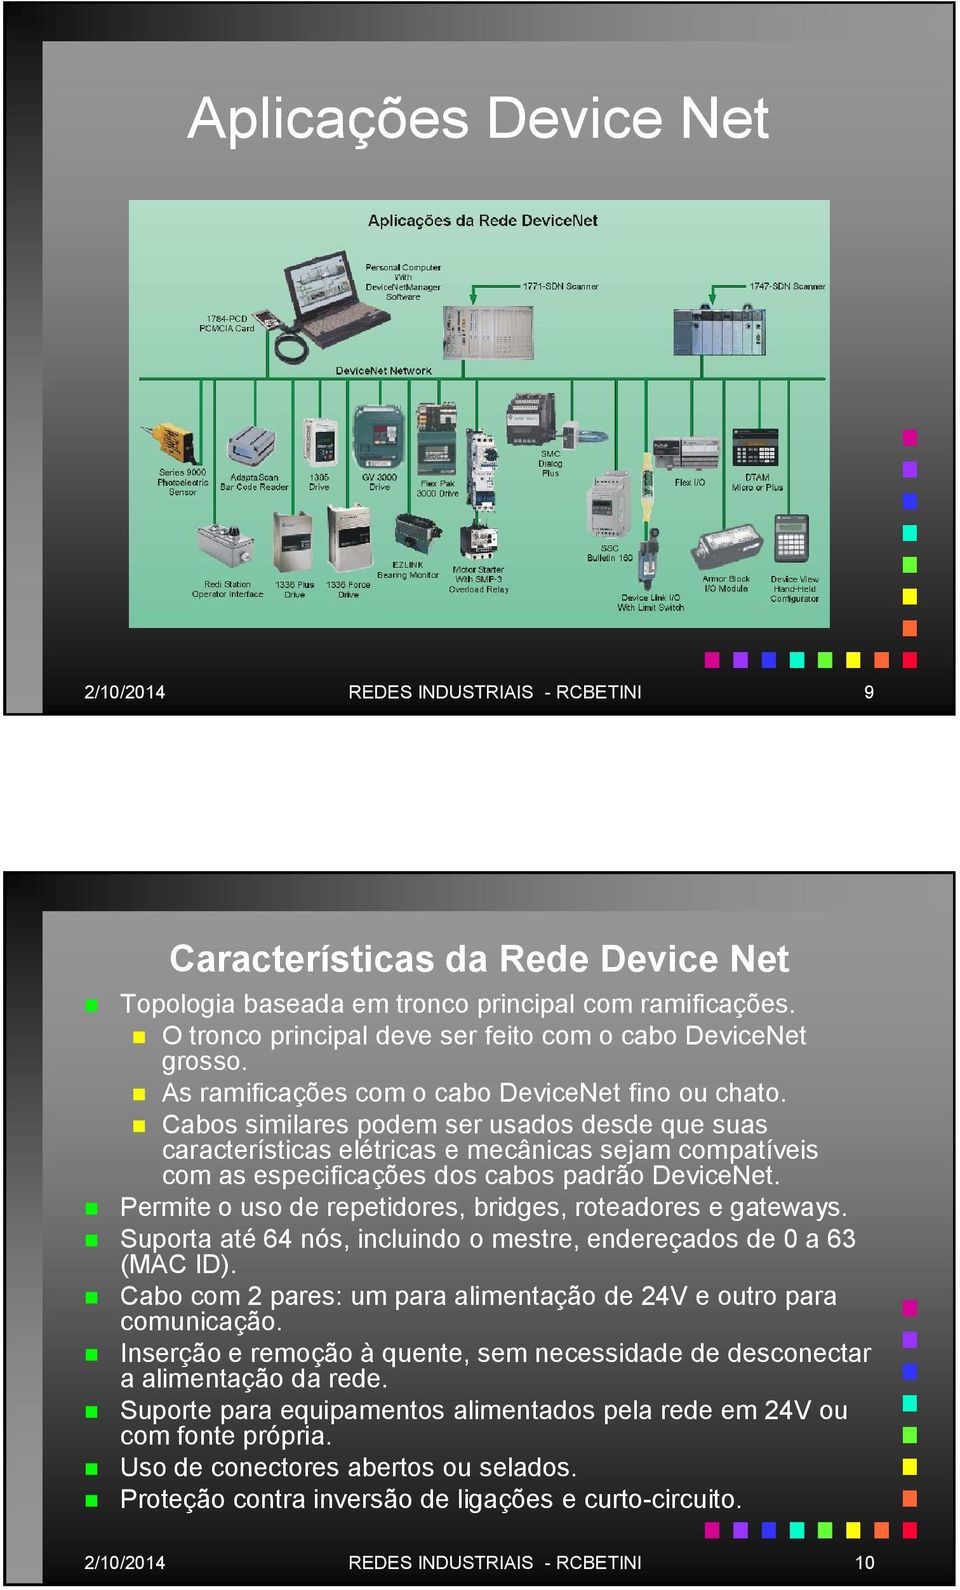 Cabos similares podem ser usados desde que suas características elétricas e mecânicas sejam compatíveis com as especificações dos cabos padrão DeviceNet.